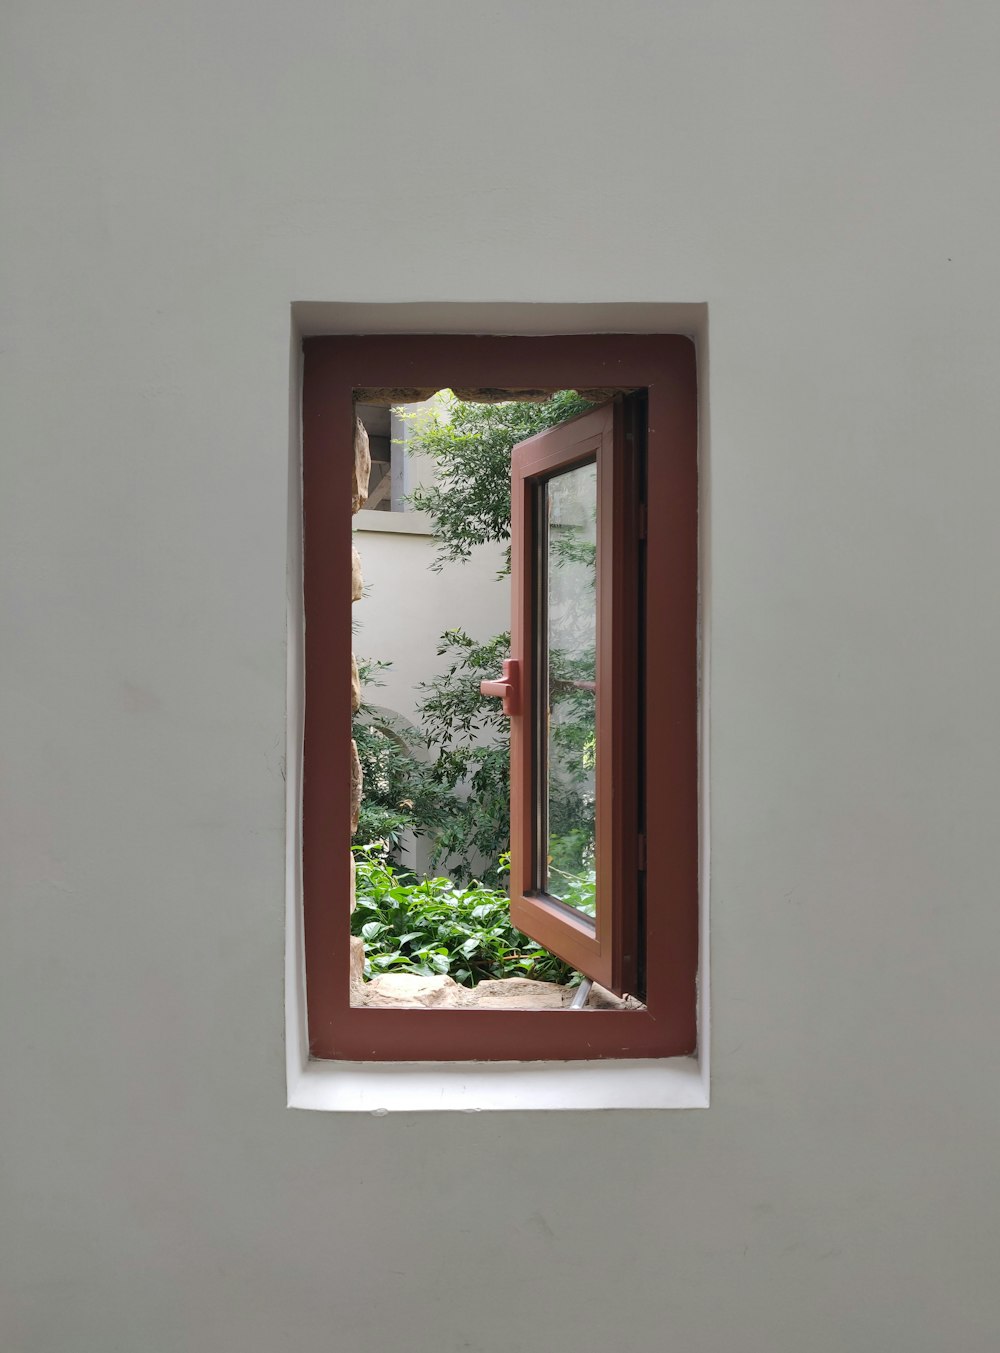 ventana de vidrio con marco de madera marrón abierta